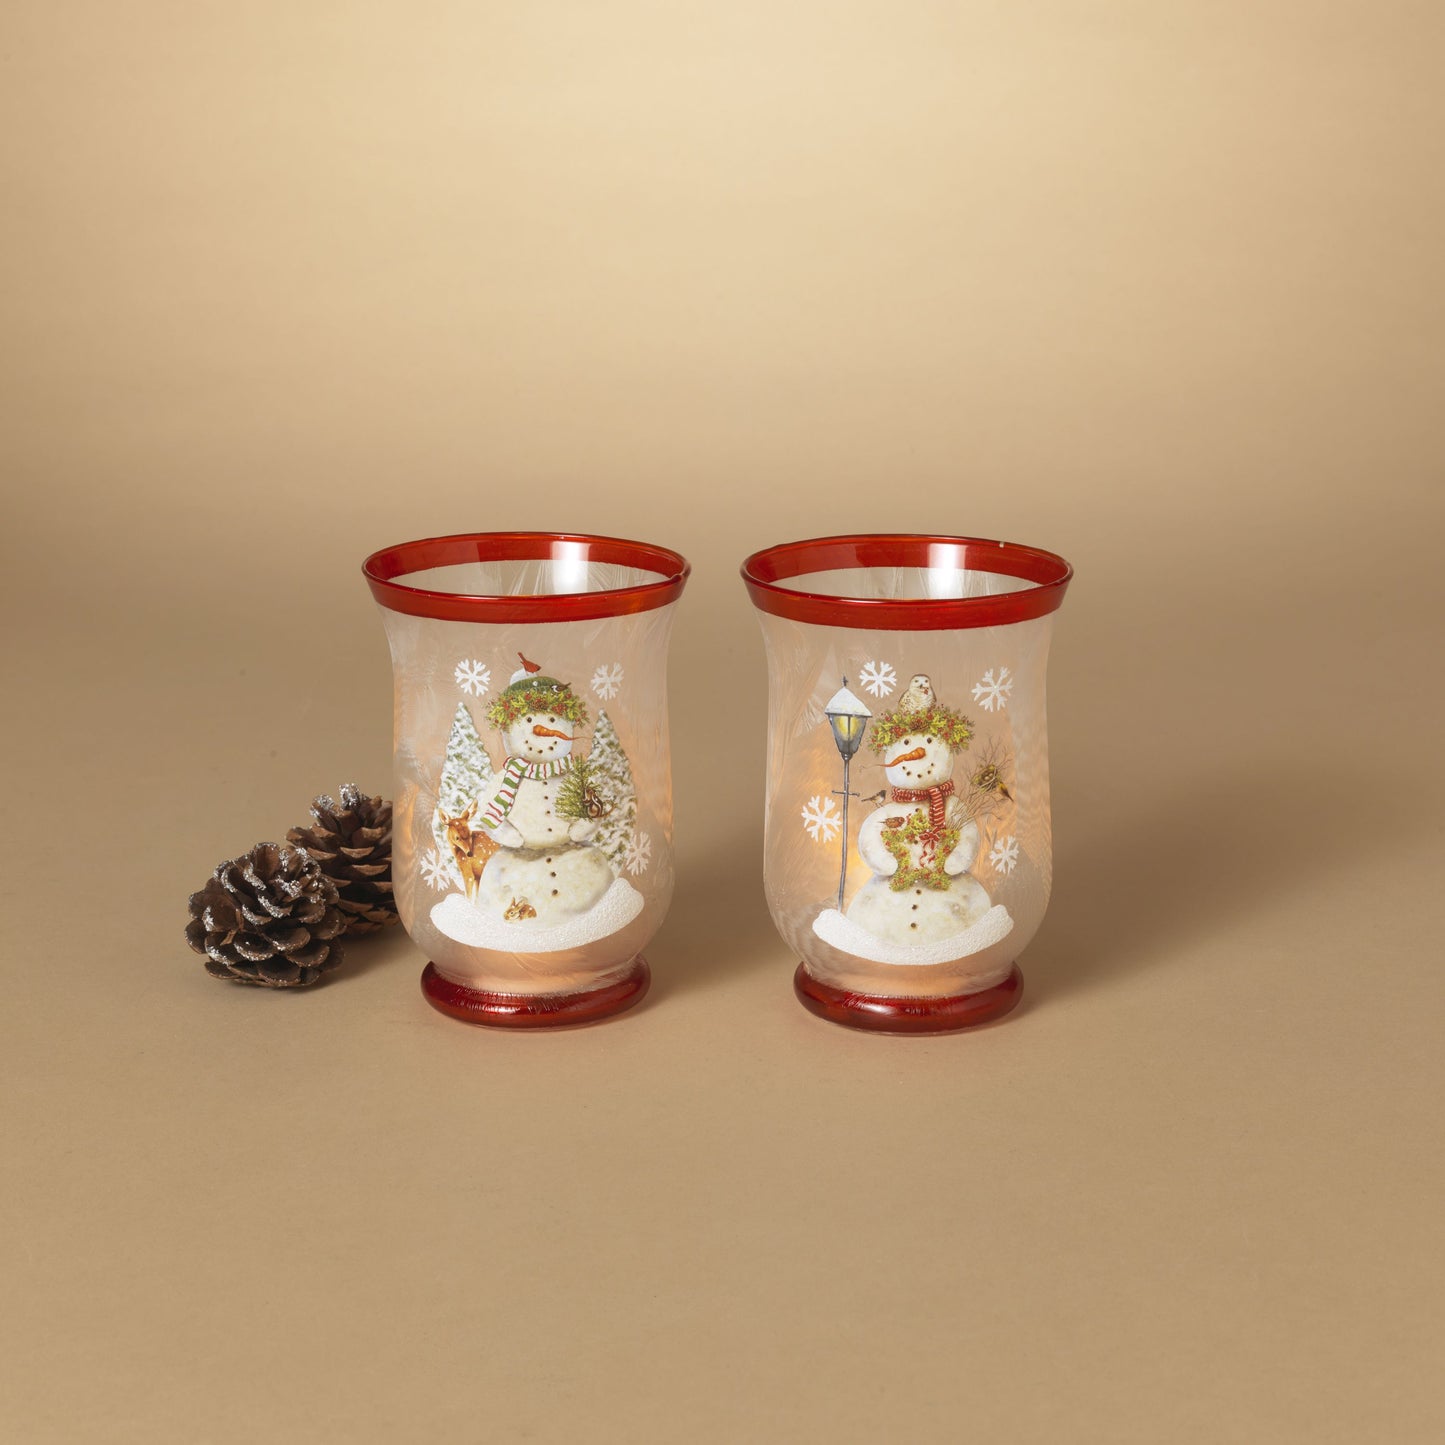 Gerson 5.9"H Frosted Glass Holiday Snowman Design Hurricane Candleholder, 2 Asst